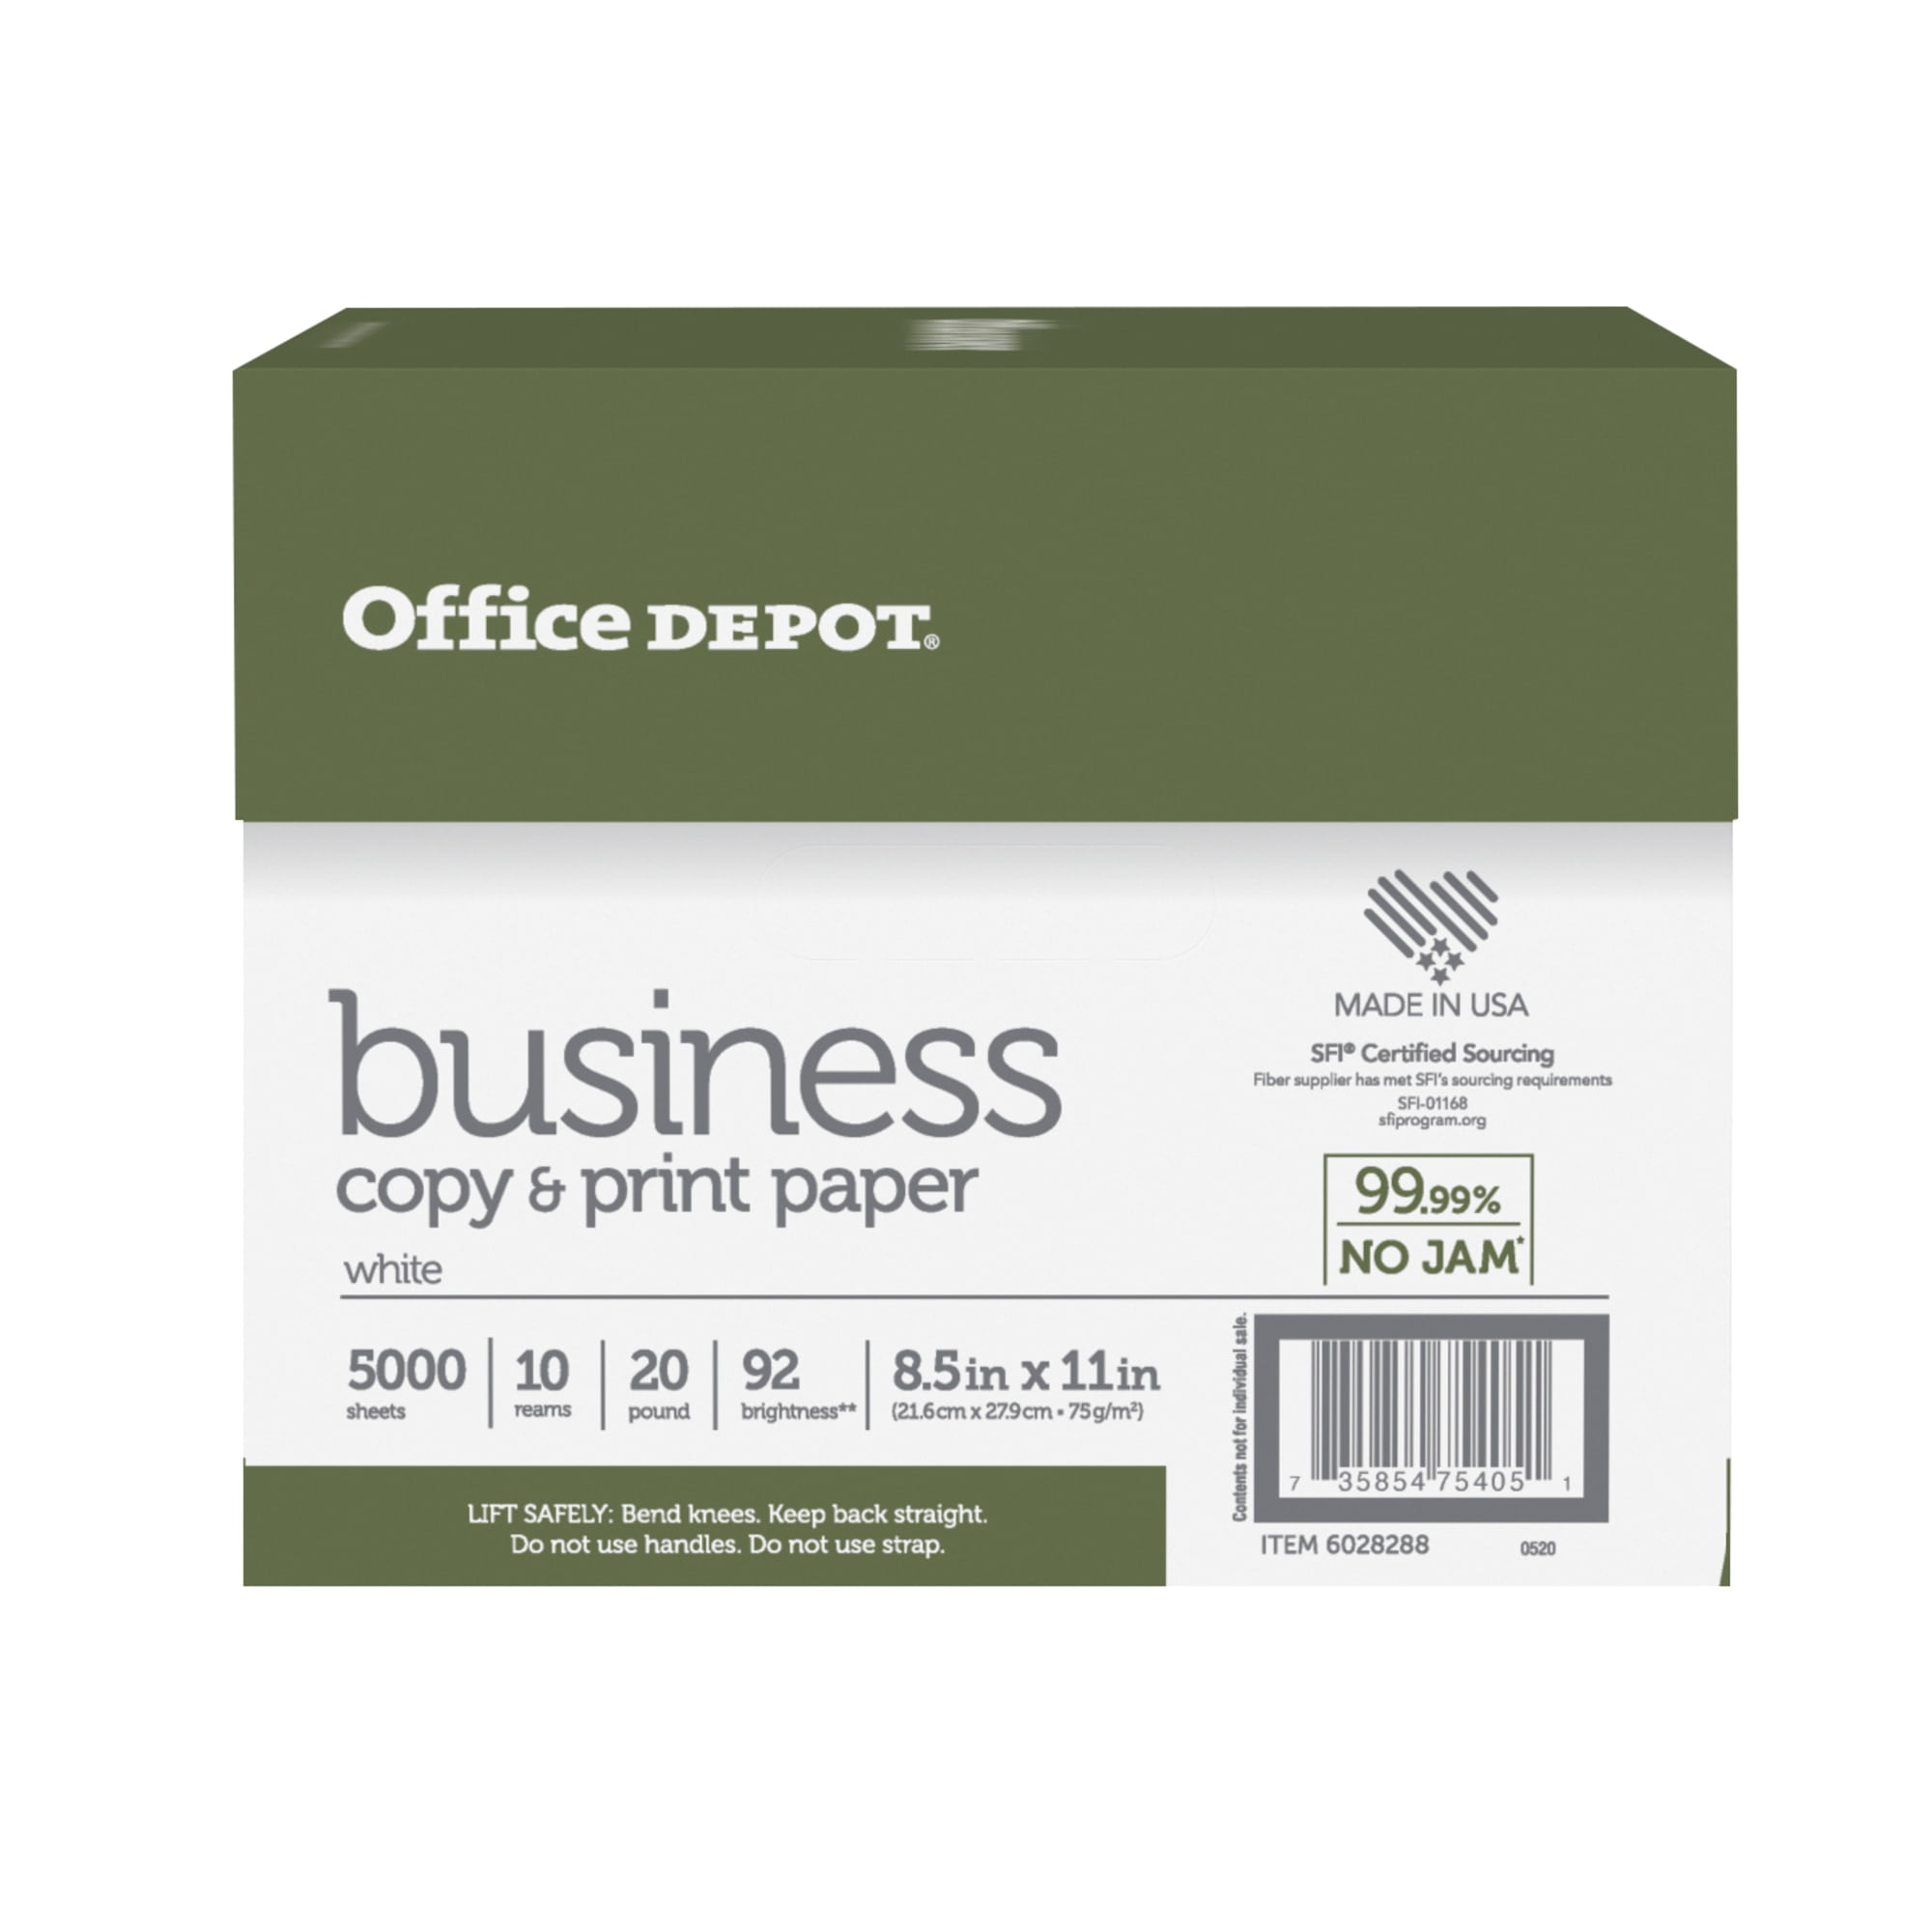 Suzano Report Multipurpose Copy Paper, 8-1/2 x 11, White, 5000